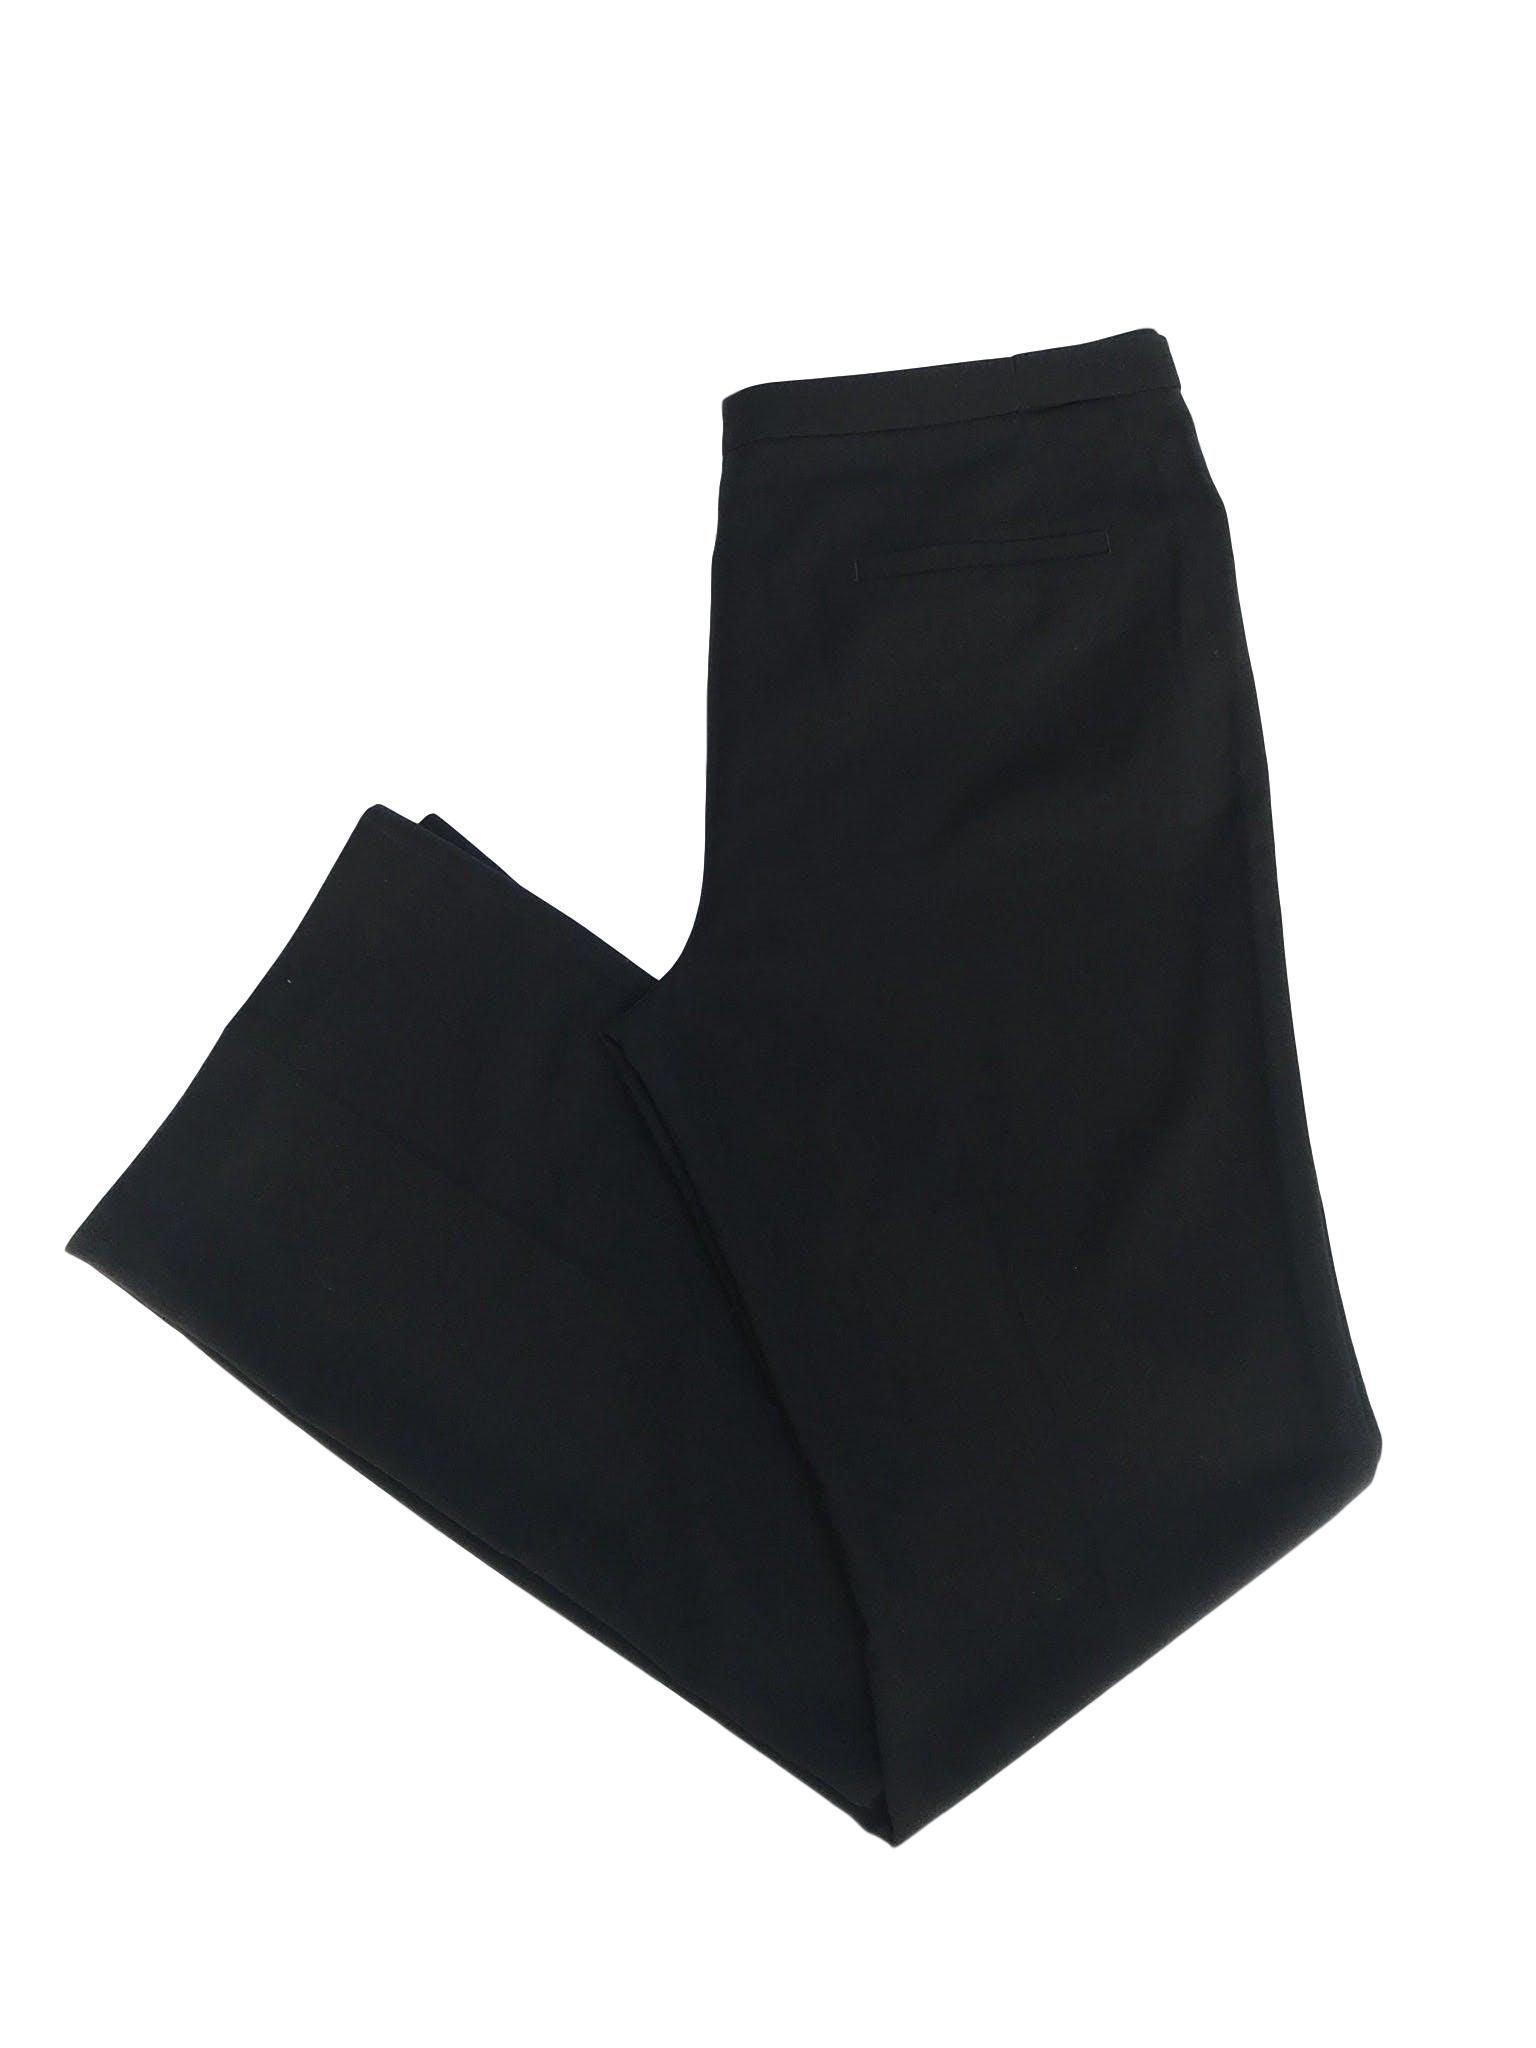 Pantalón Esprit, tela tipo sastre negro, rica al tacto, bolsillos y botones laterales en la pretina, corte recto. Precio original S/ 140. ¡Como nuevo!
Talla 32